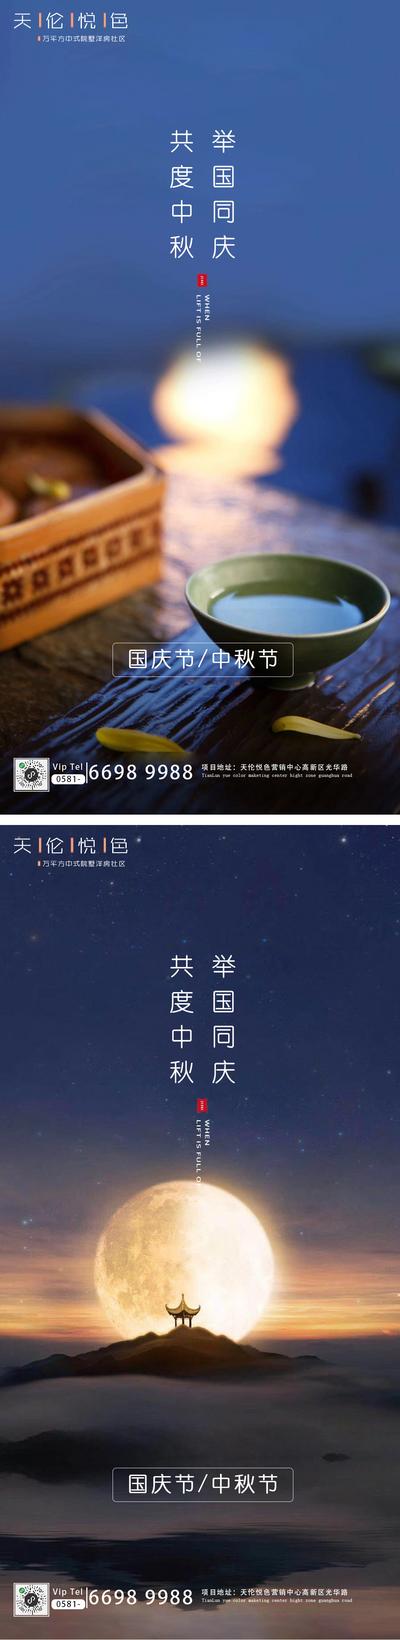 南门网 海报 房地产 公历节日 中秋节 国庆节 月亮